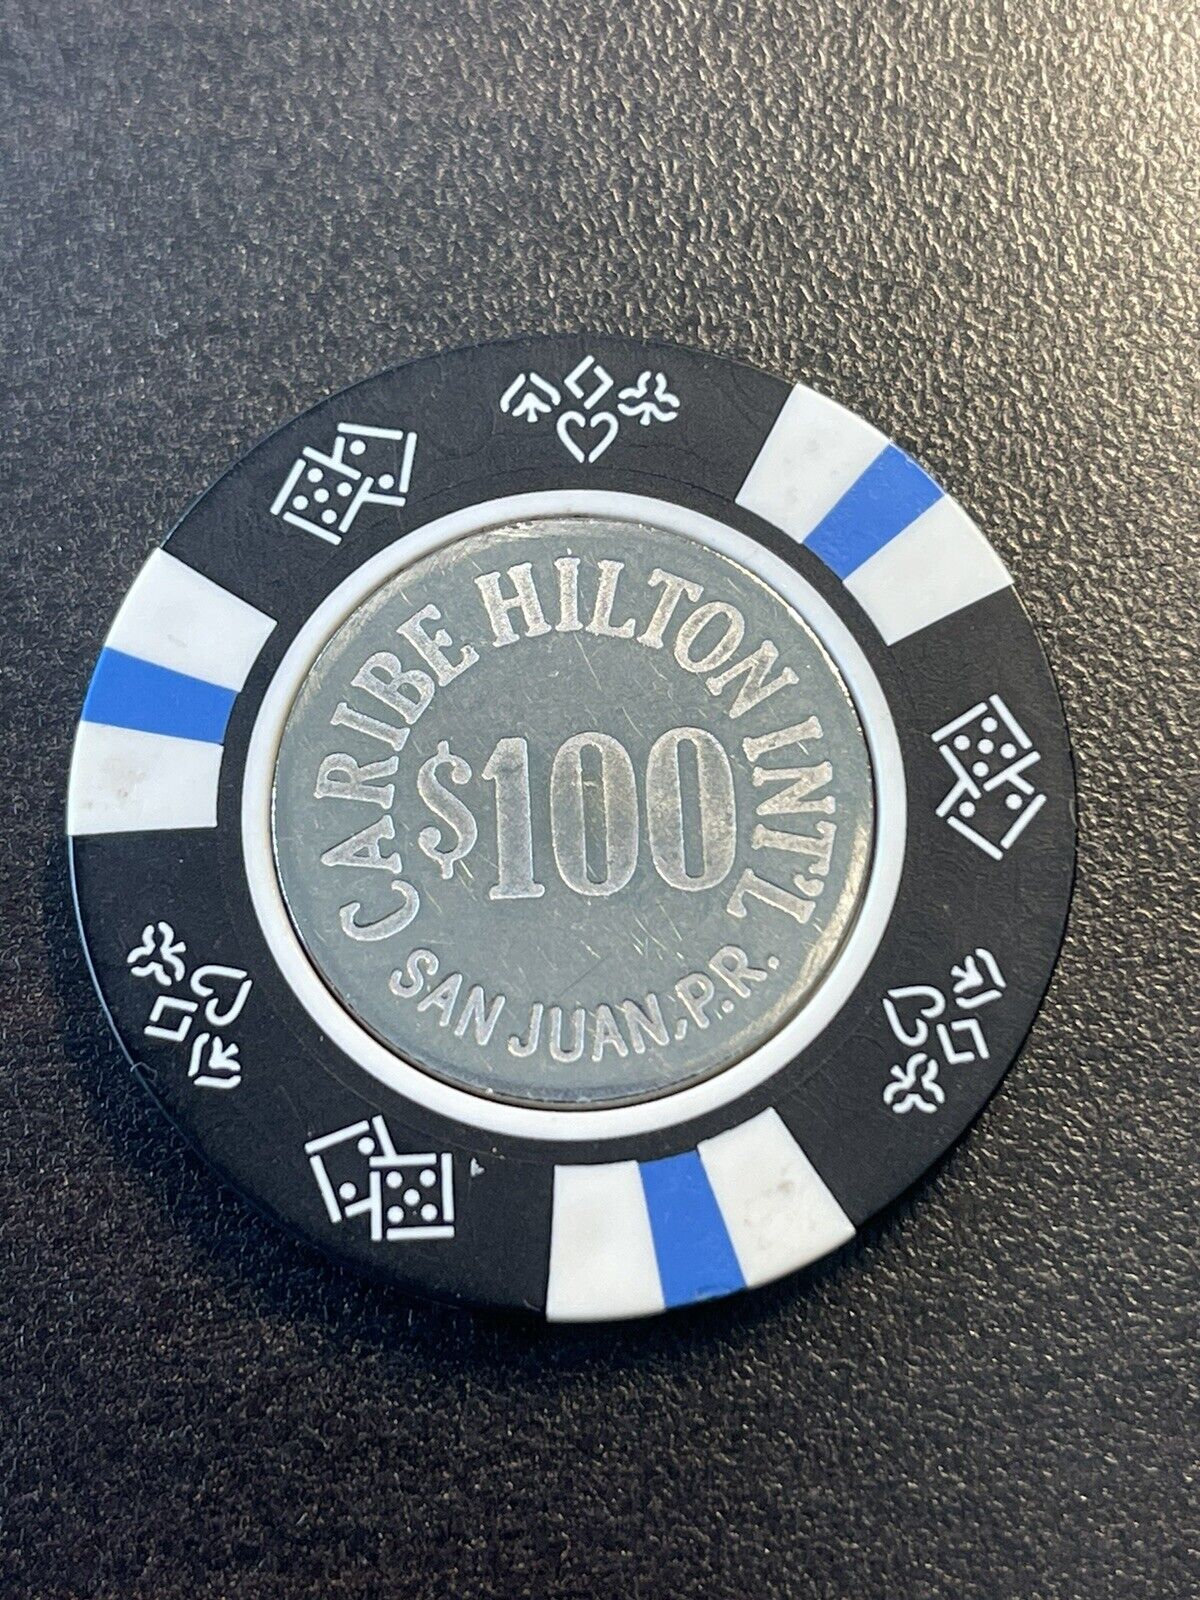 $100 Caribe Hilton San Juan Puerto Rico Casino Chip CHC-100D *Very Very Rare*